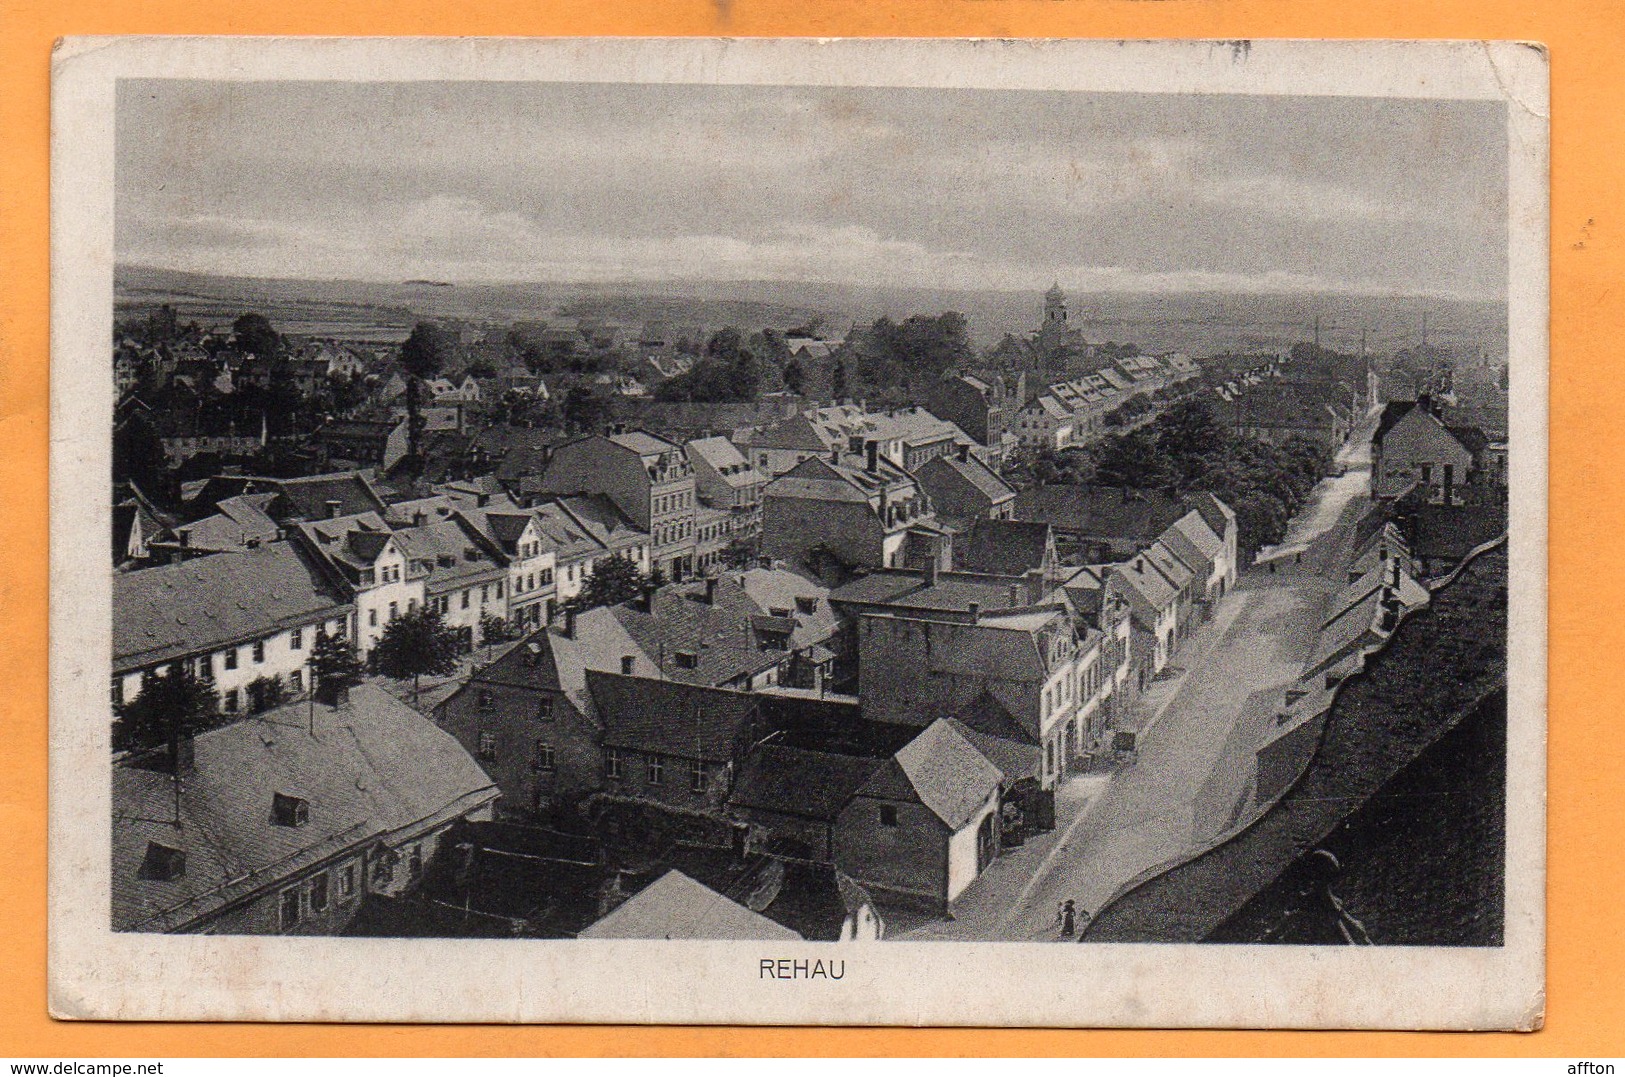 Rehau Germany 1910 Postcard - Rehau